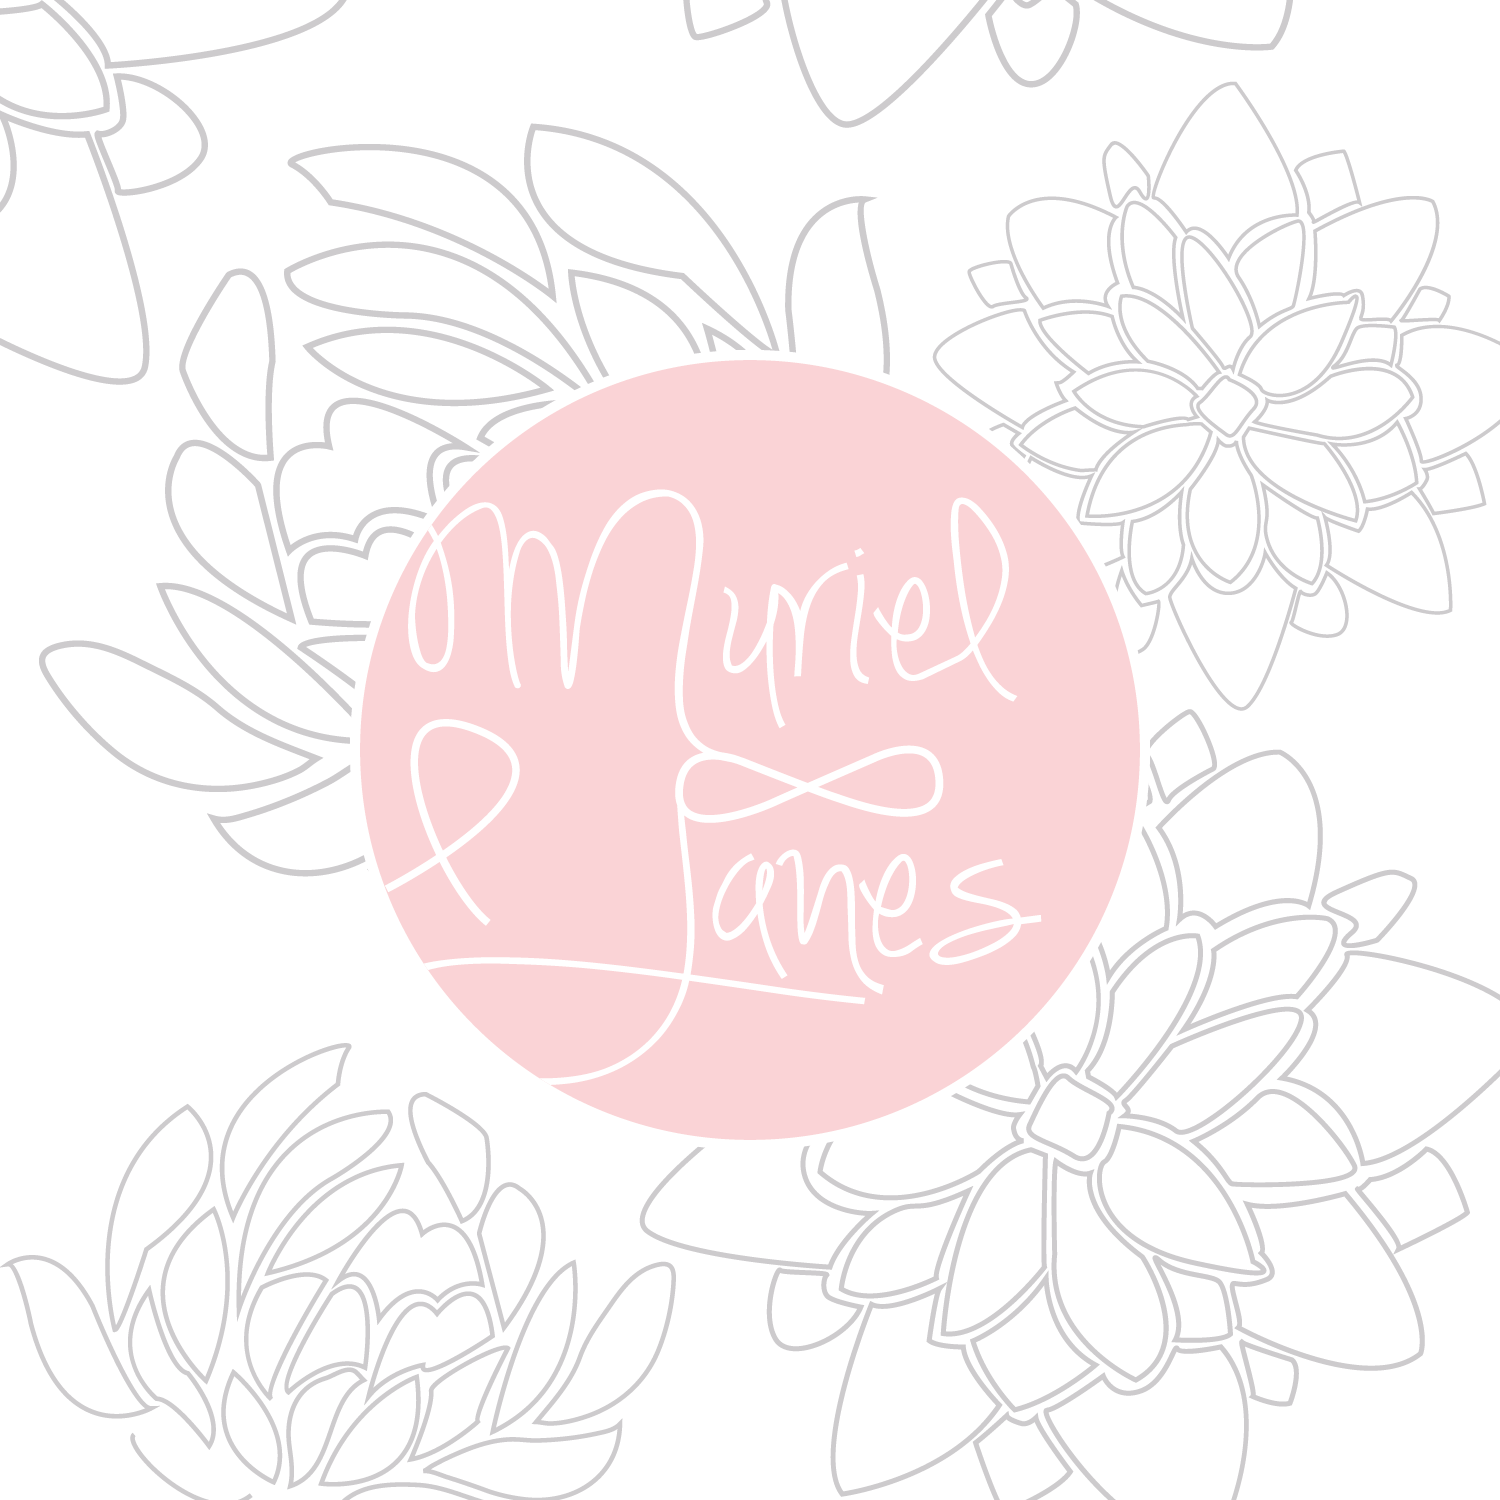 Muriel & Janes Logo